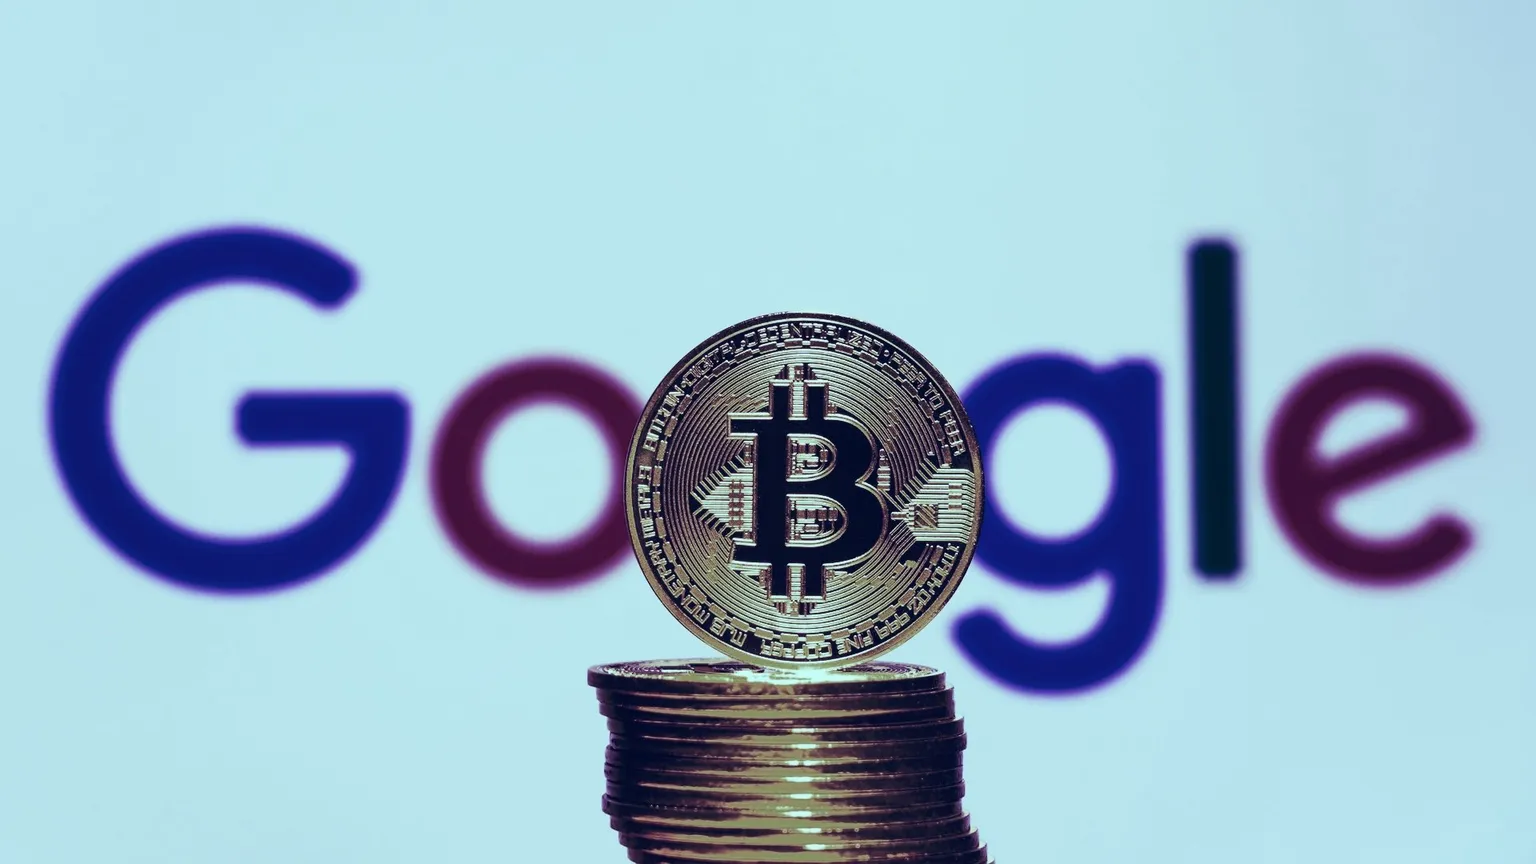 La aplicación maliciosa de Google que se apropió de 12 bitcoin podría haber sido detectada antes. Imagen: Shutterstock